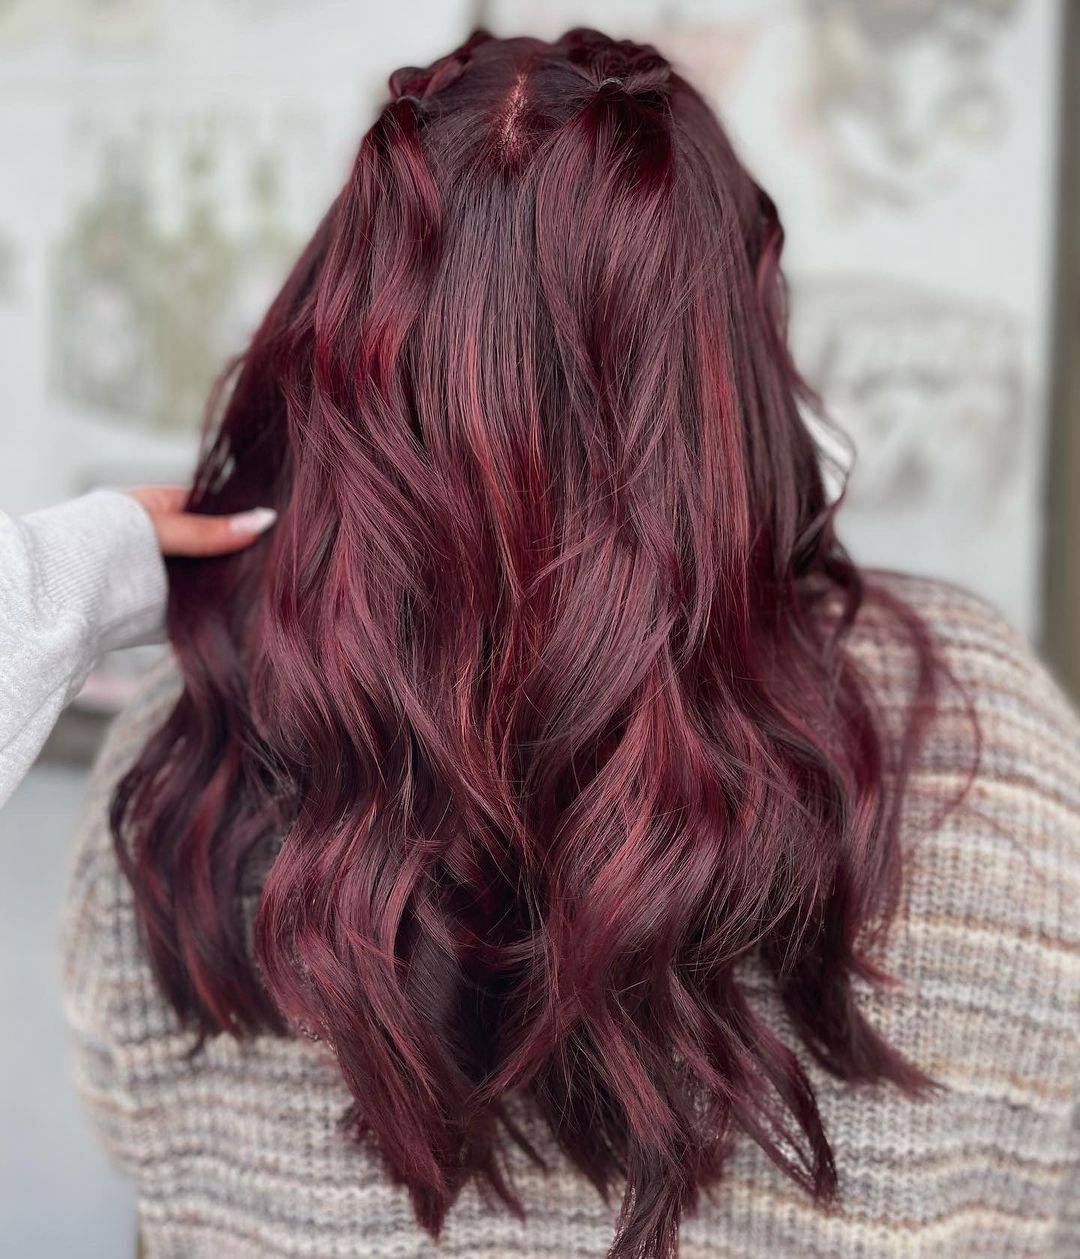 Burgundy hair color 209 burgundy hair color | burgundy hair color for women | burgundy hair color highlights Burgundy Hair Color